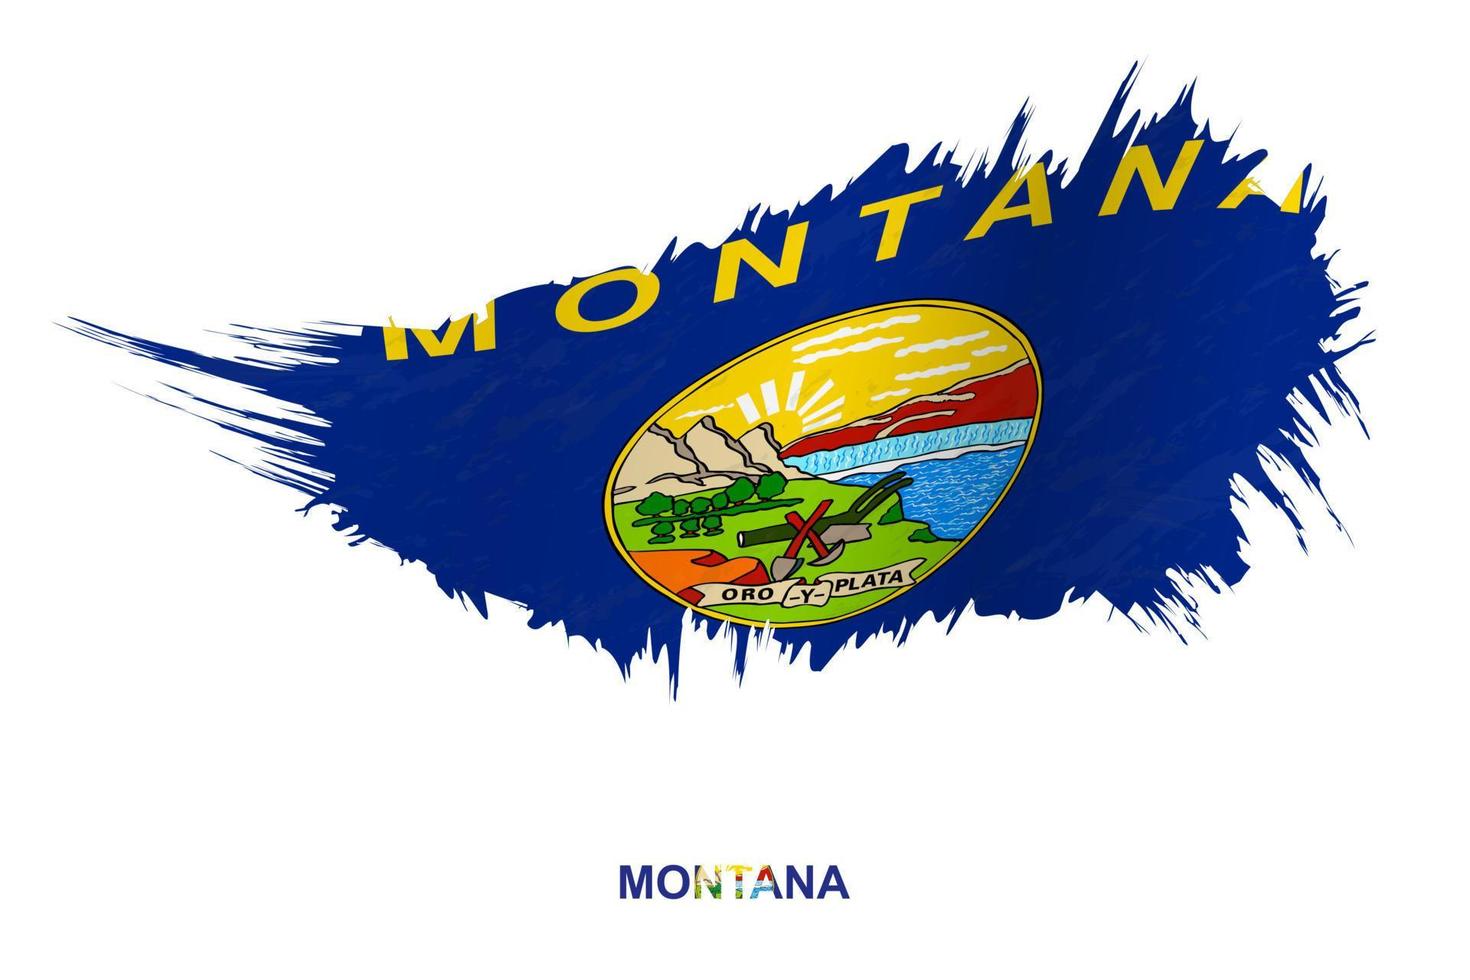 bandera del estado de montana en estilo grunge con efecto ondulante. vector